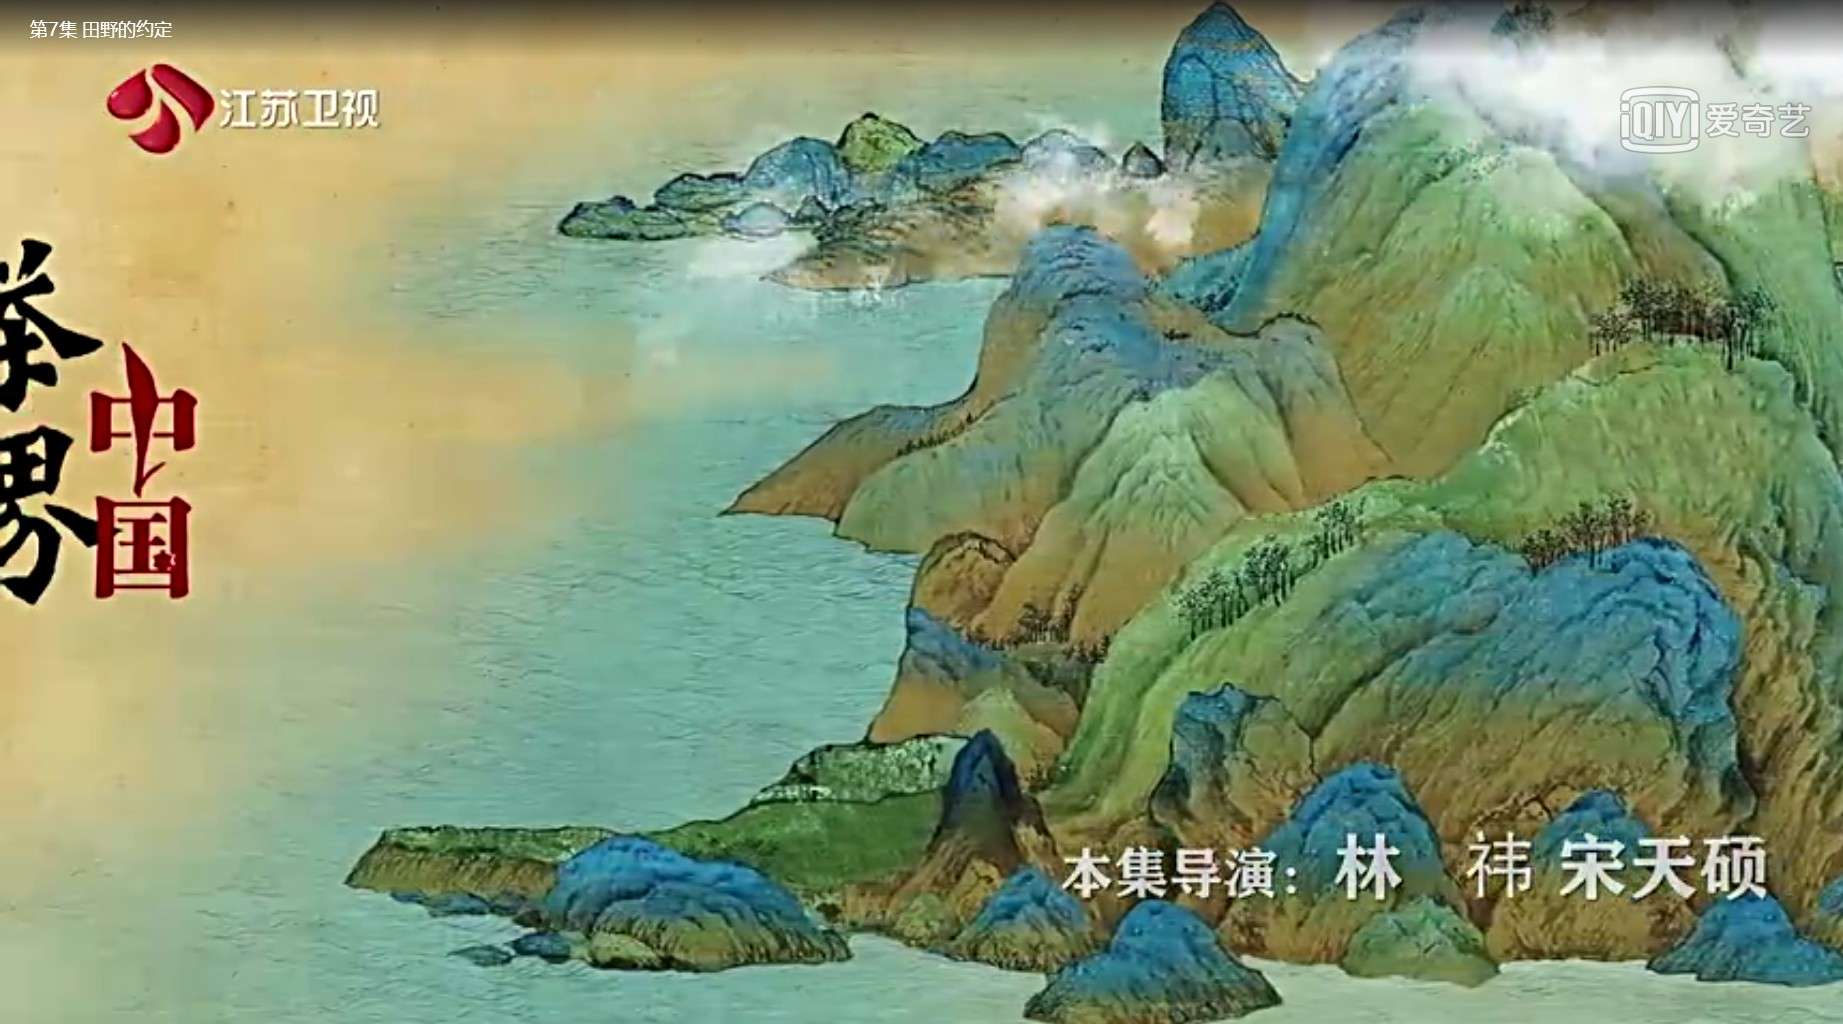 江苏卫视纪录片《茶界中国》